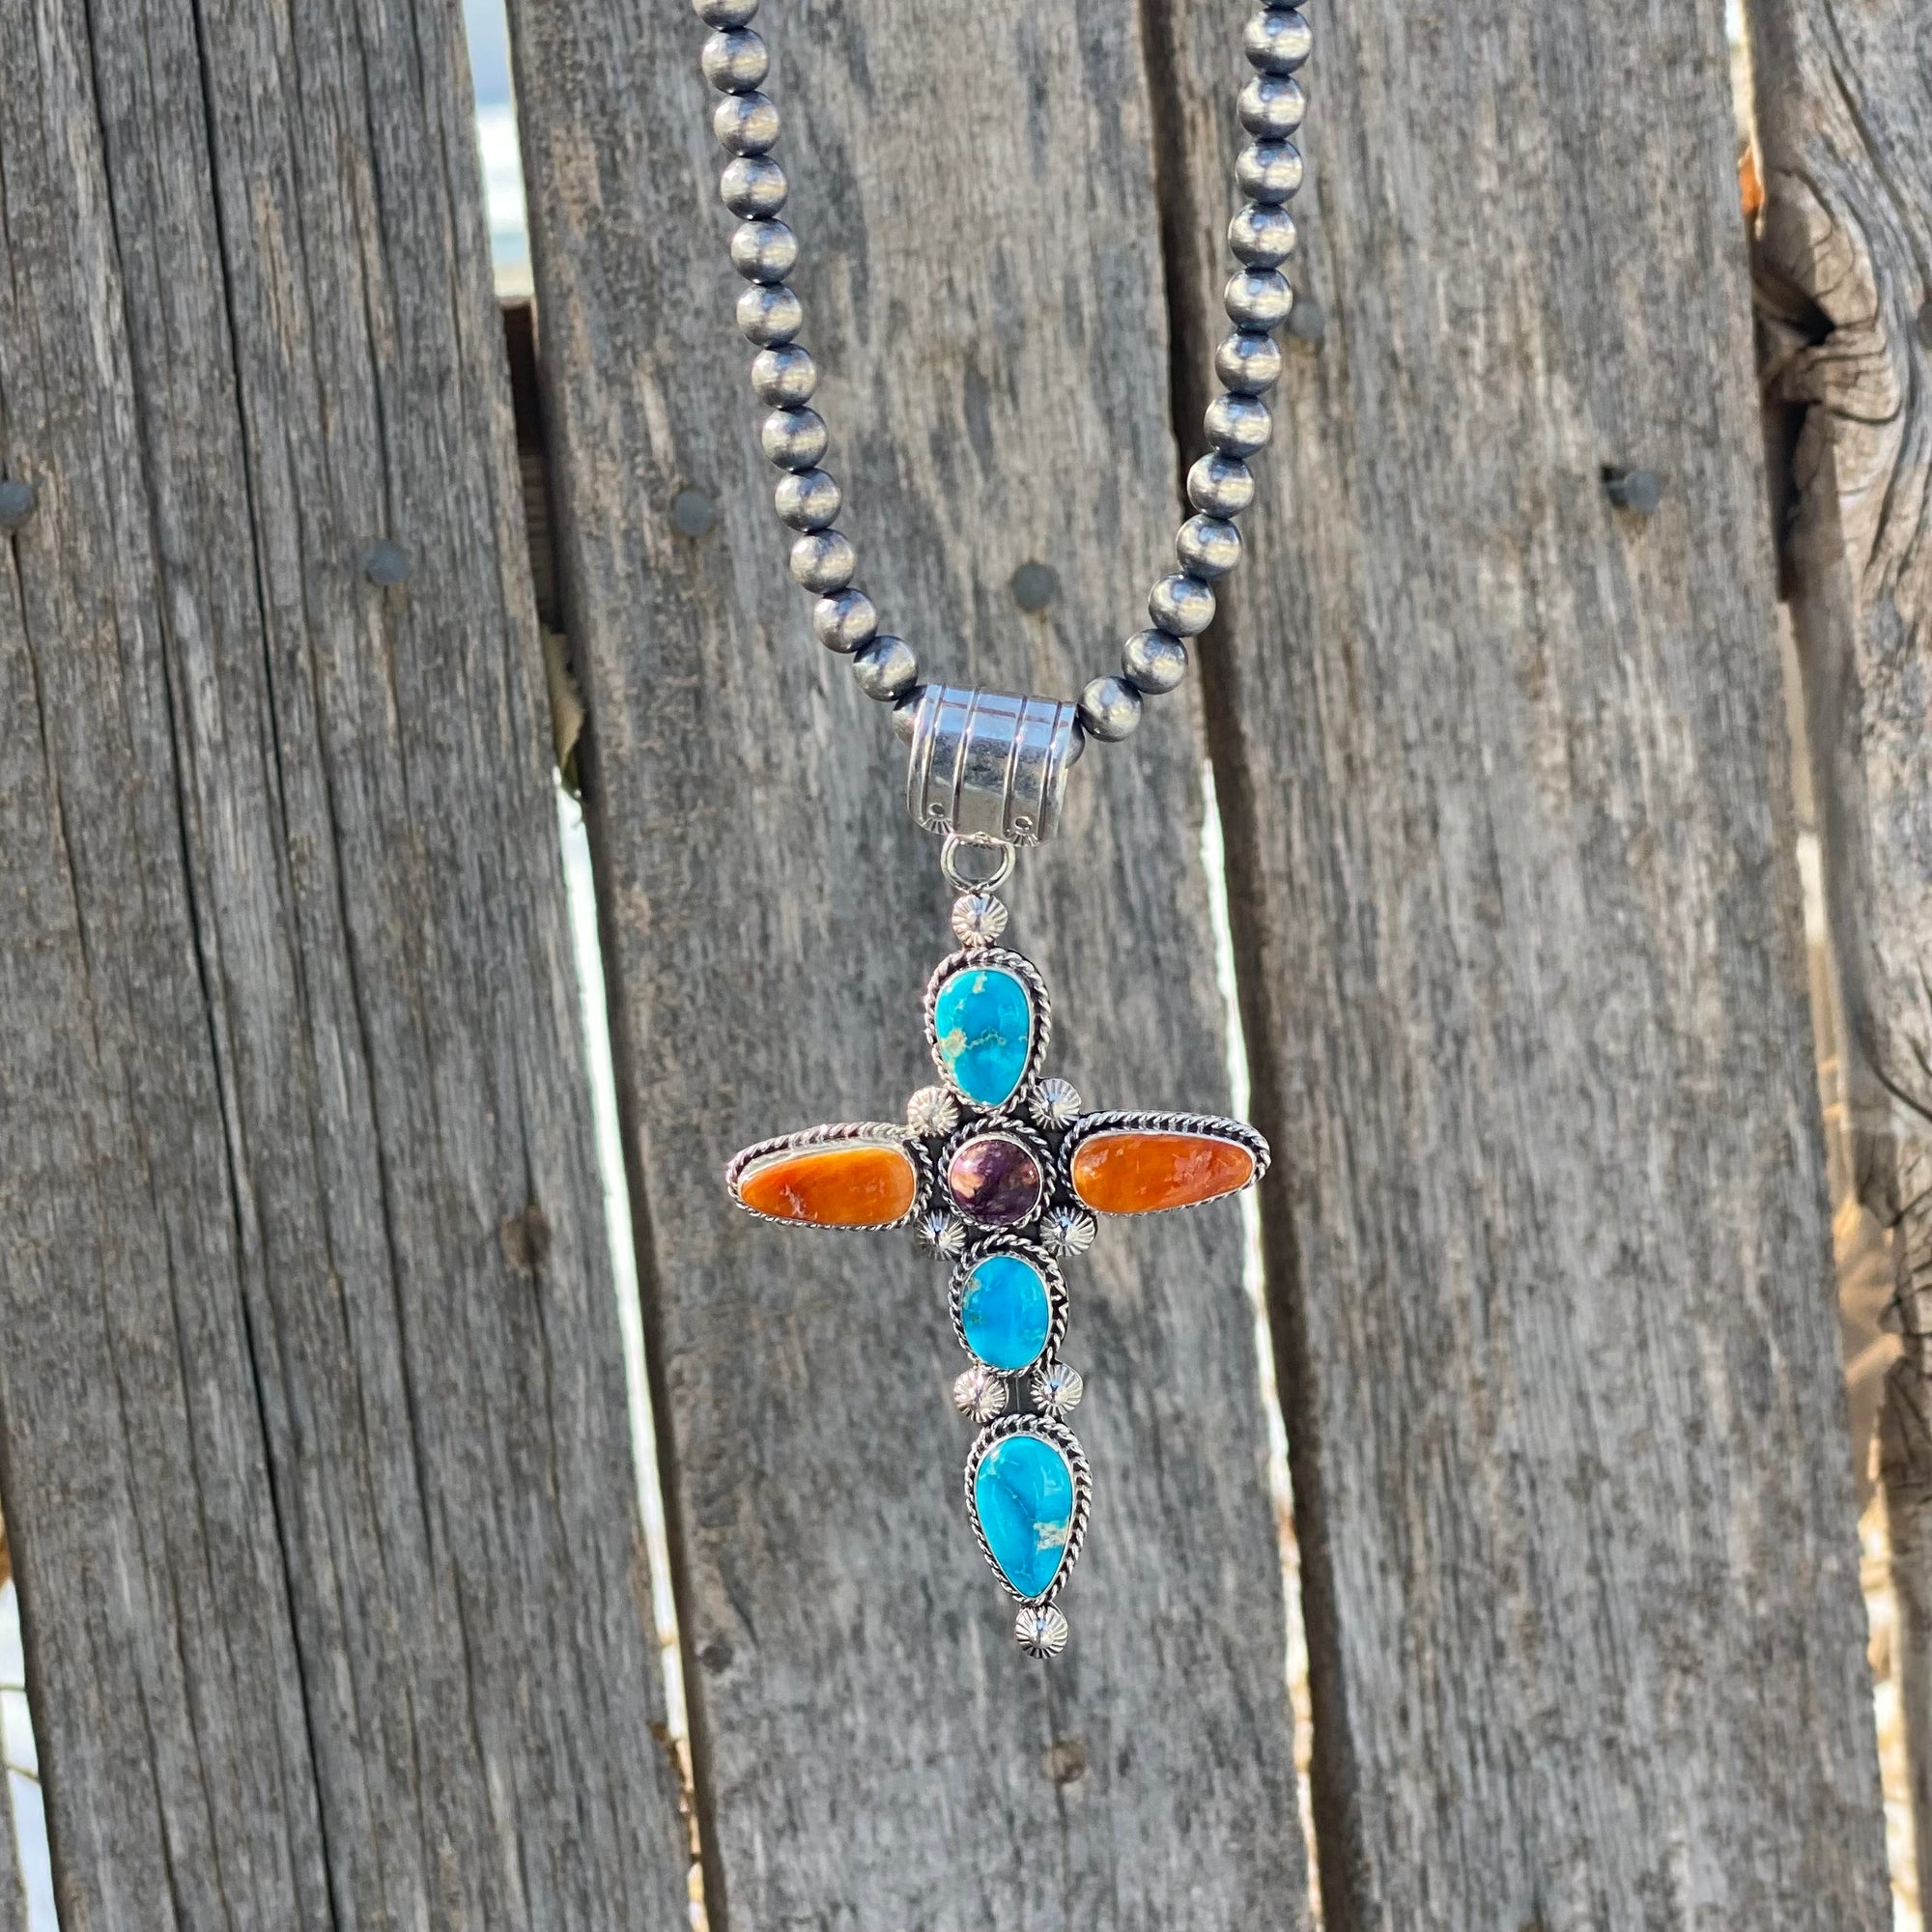 Spiny Cross Necklace